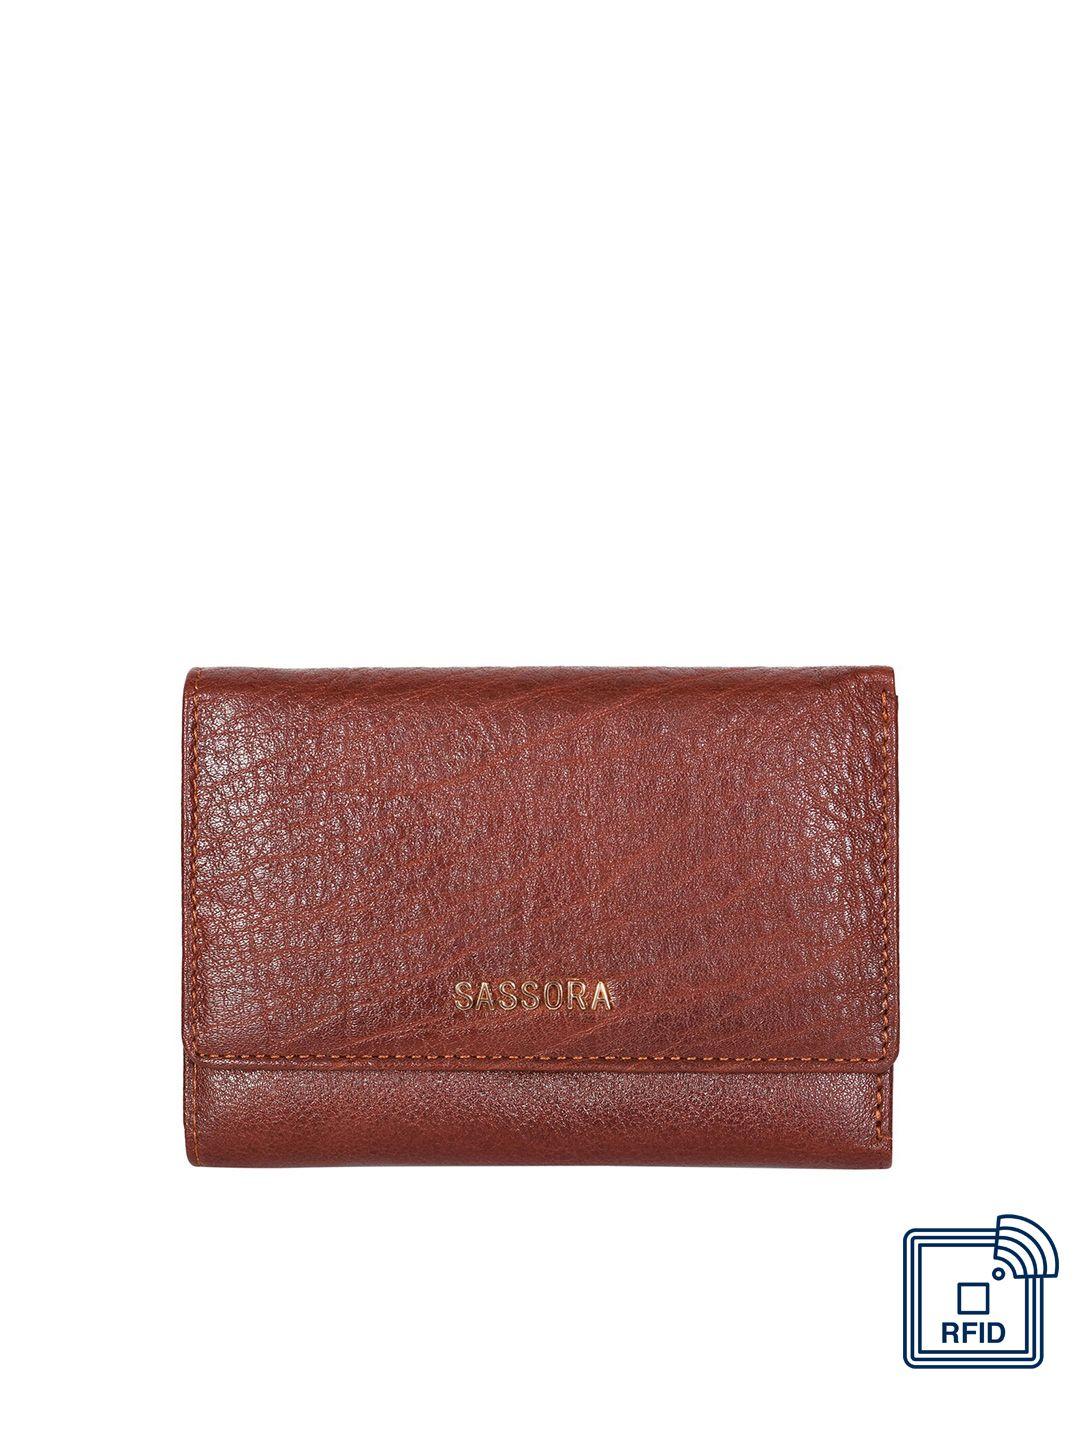 sassora women leather three fold wallet